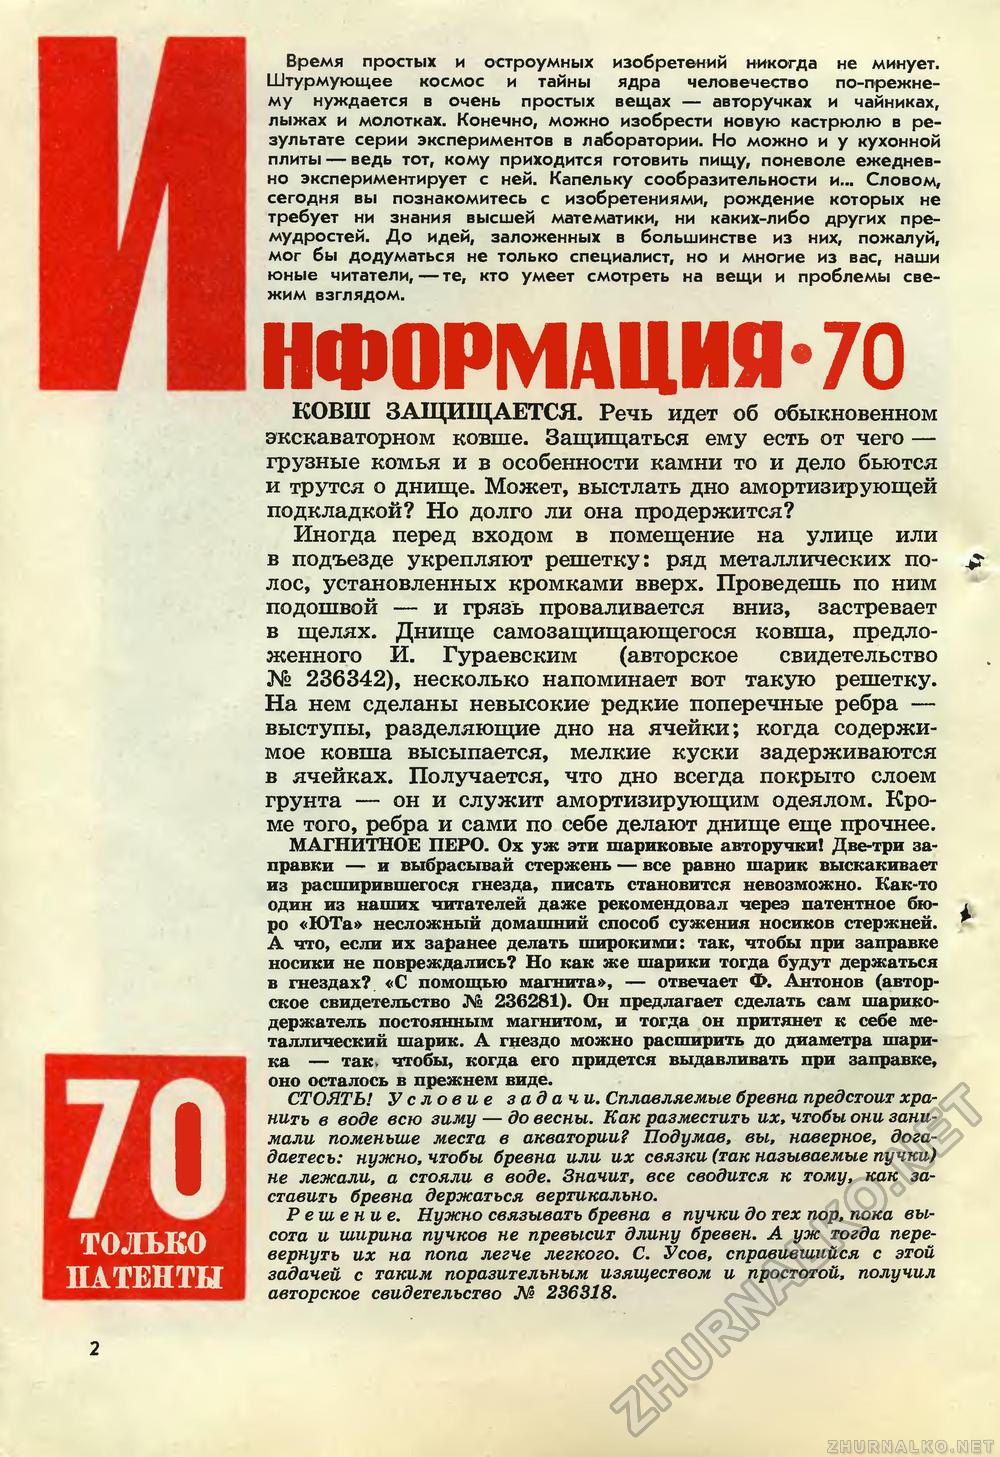   1970-03,  4